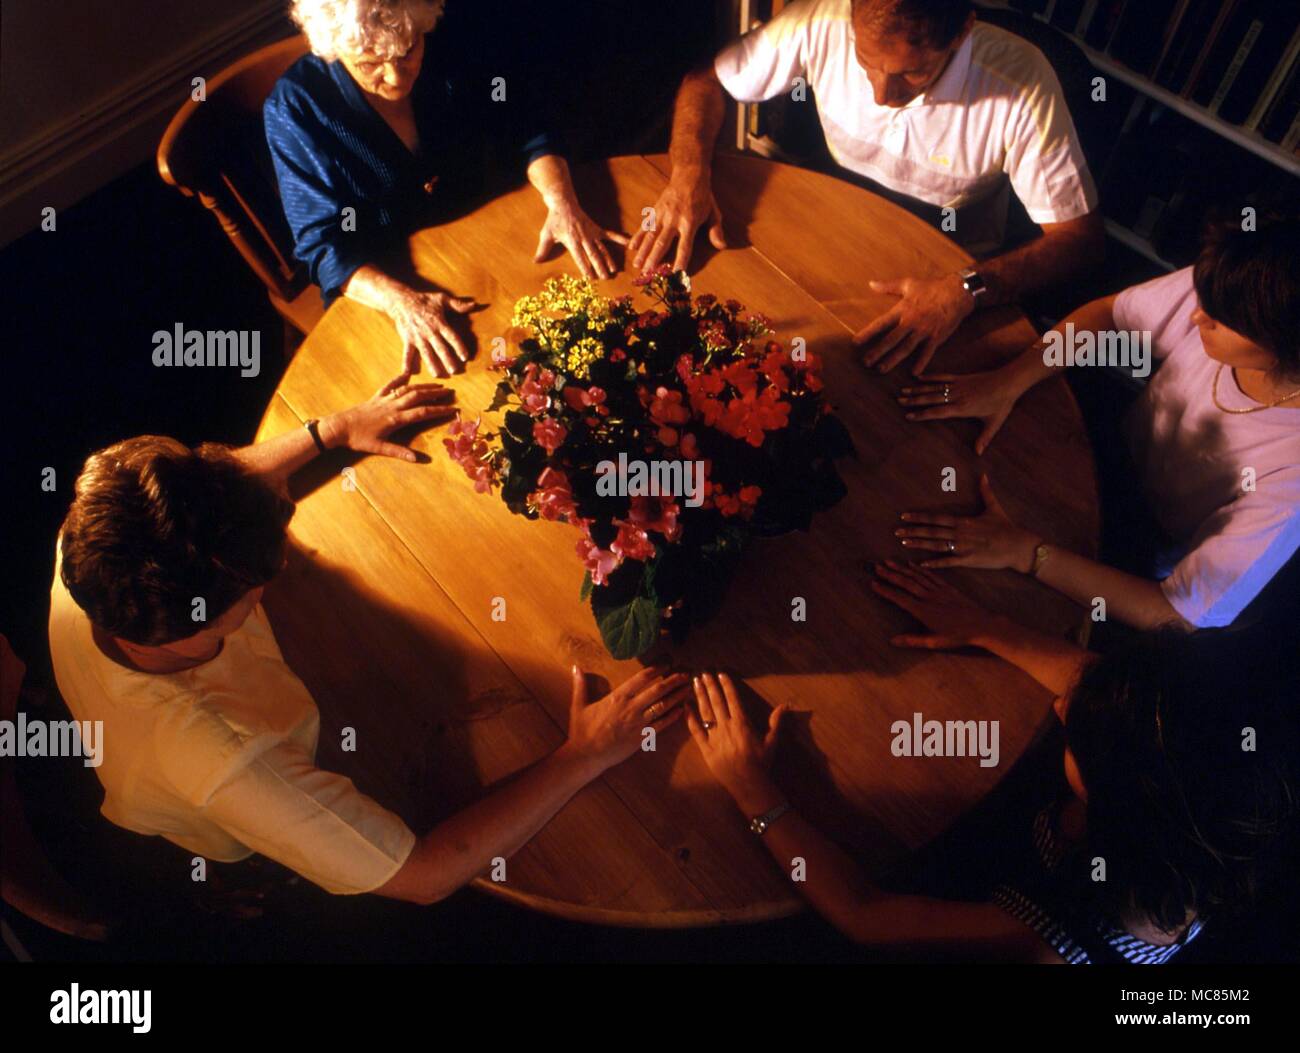 Eine Gruppe von Menschen an einem Tisch, mit den Händen berühren, mit dem Ziel, die Ladung der Atmosphäre in einer Weise förderlich für die geisterbeschwörung hellsichtig. Die Blumen werden gesagt, Kontakt mit den Geistwesen zu erhöhen. Stockfoto